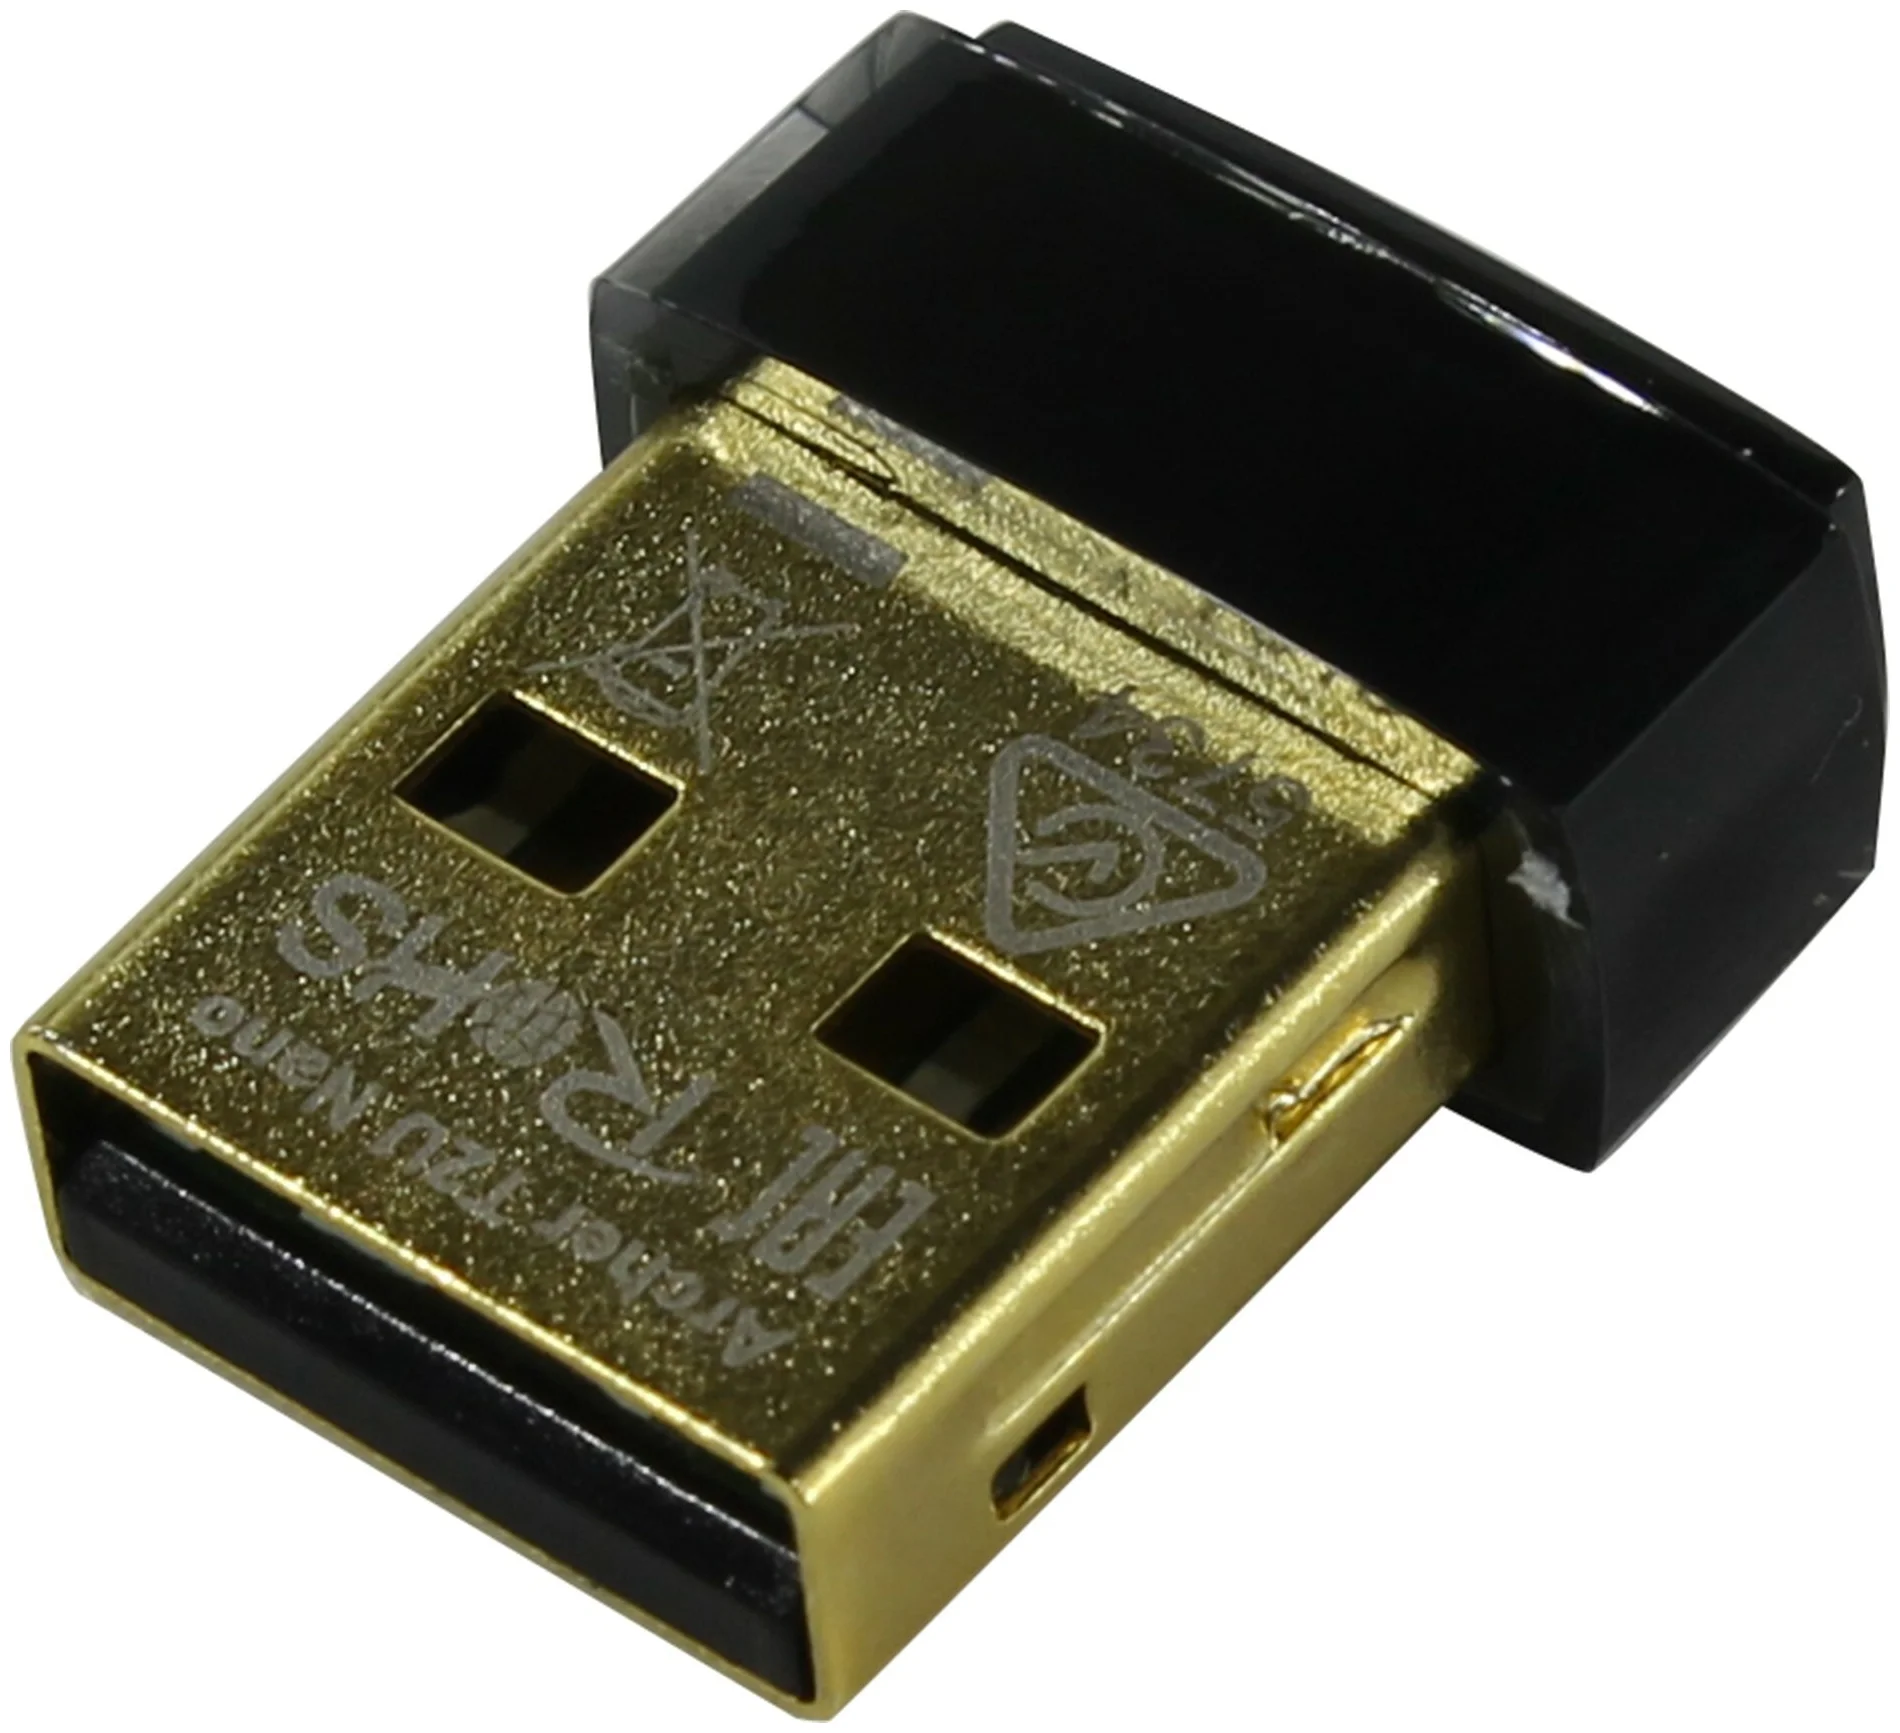 TP-LINK Archer T2U Nano - интерфейс подключения: USB